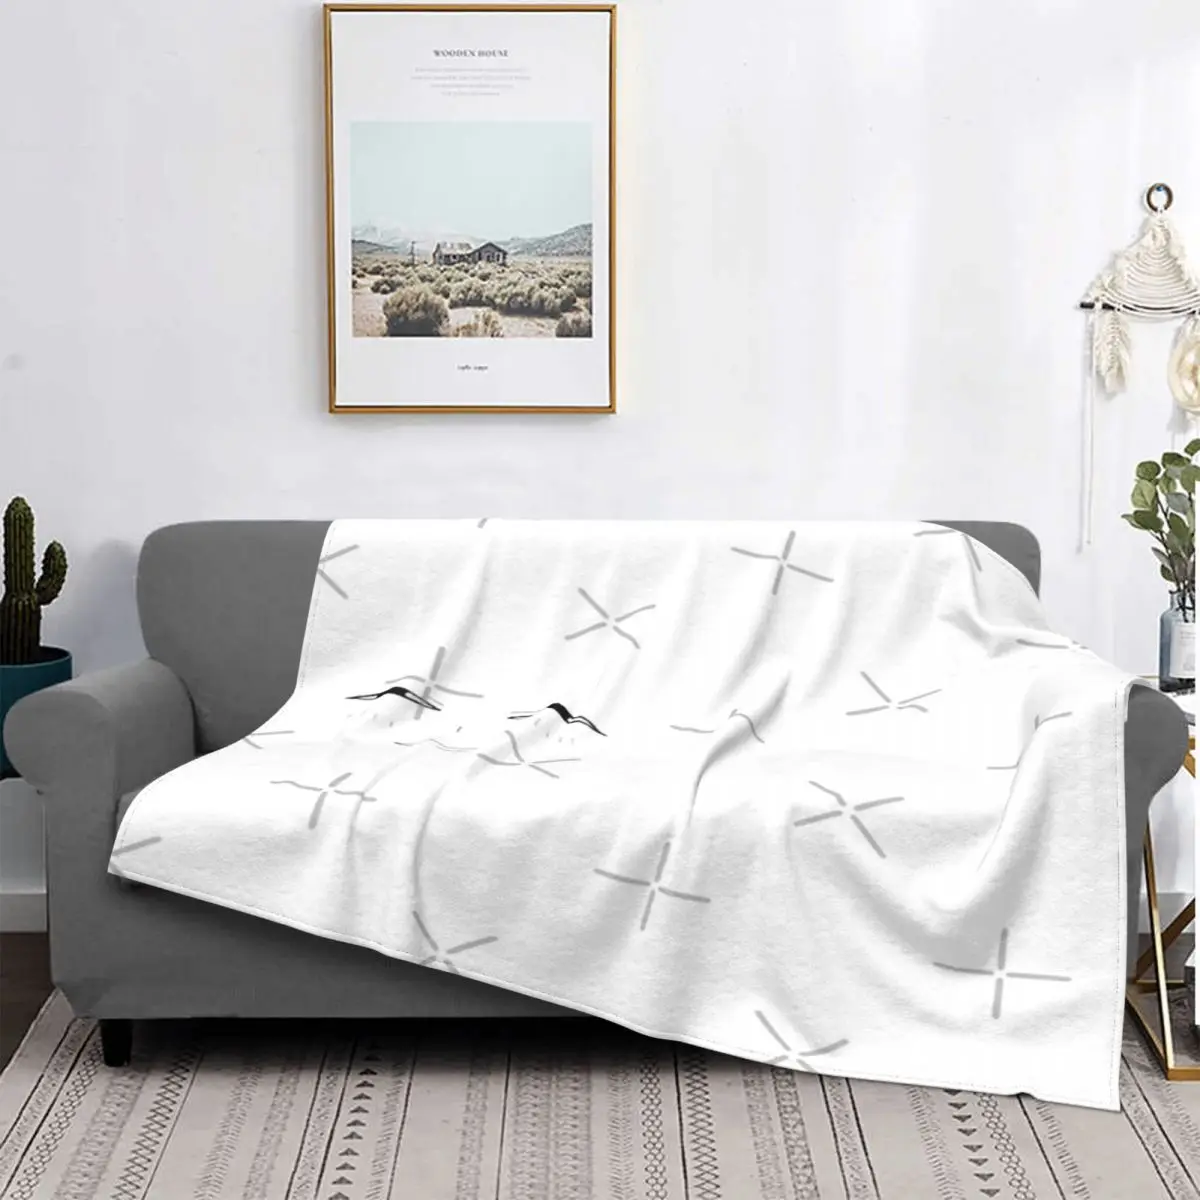 

Одеяло для всей семьи Anya Folger Smug, покрывало для кровати в клетку из муслина, пляжное полотенце, Флисовое одеяло, постельное белье